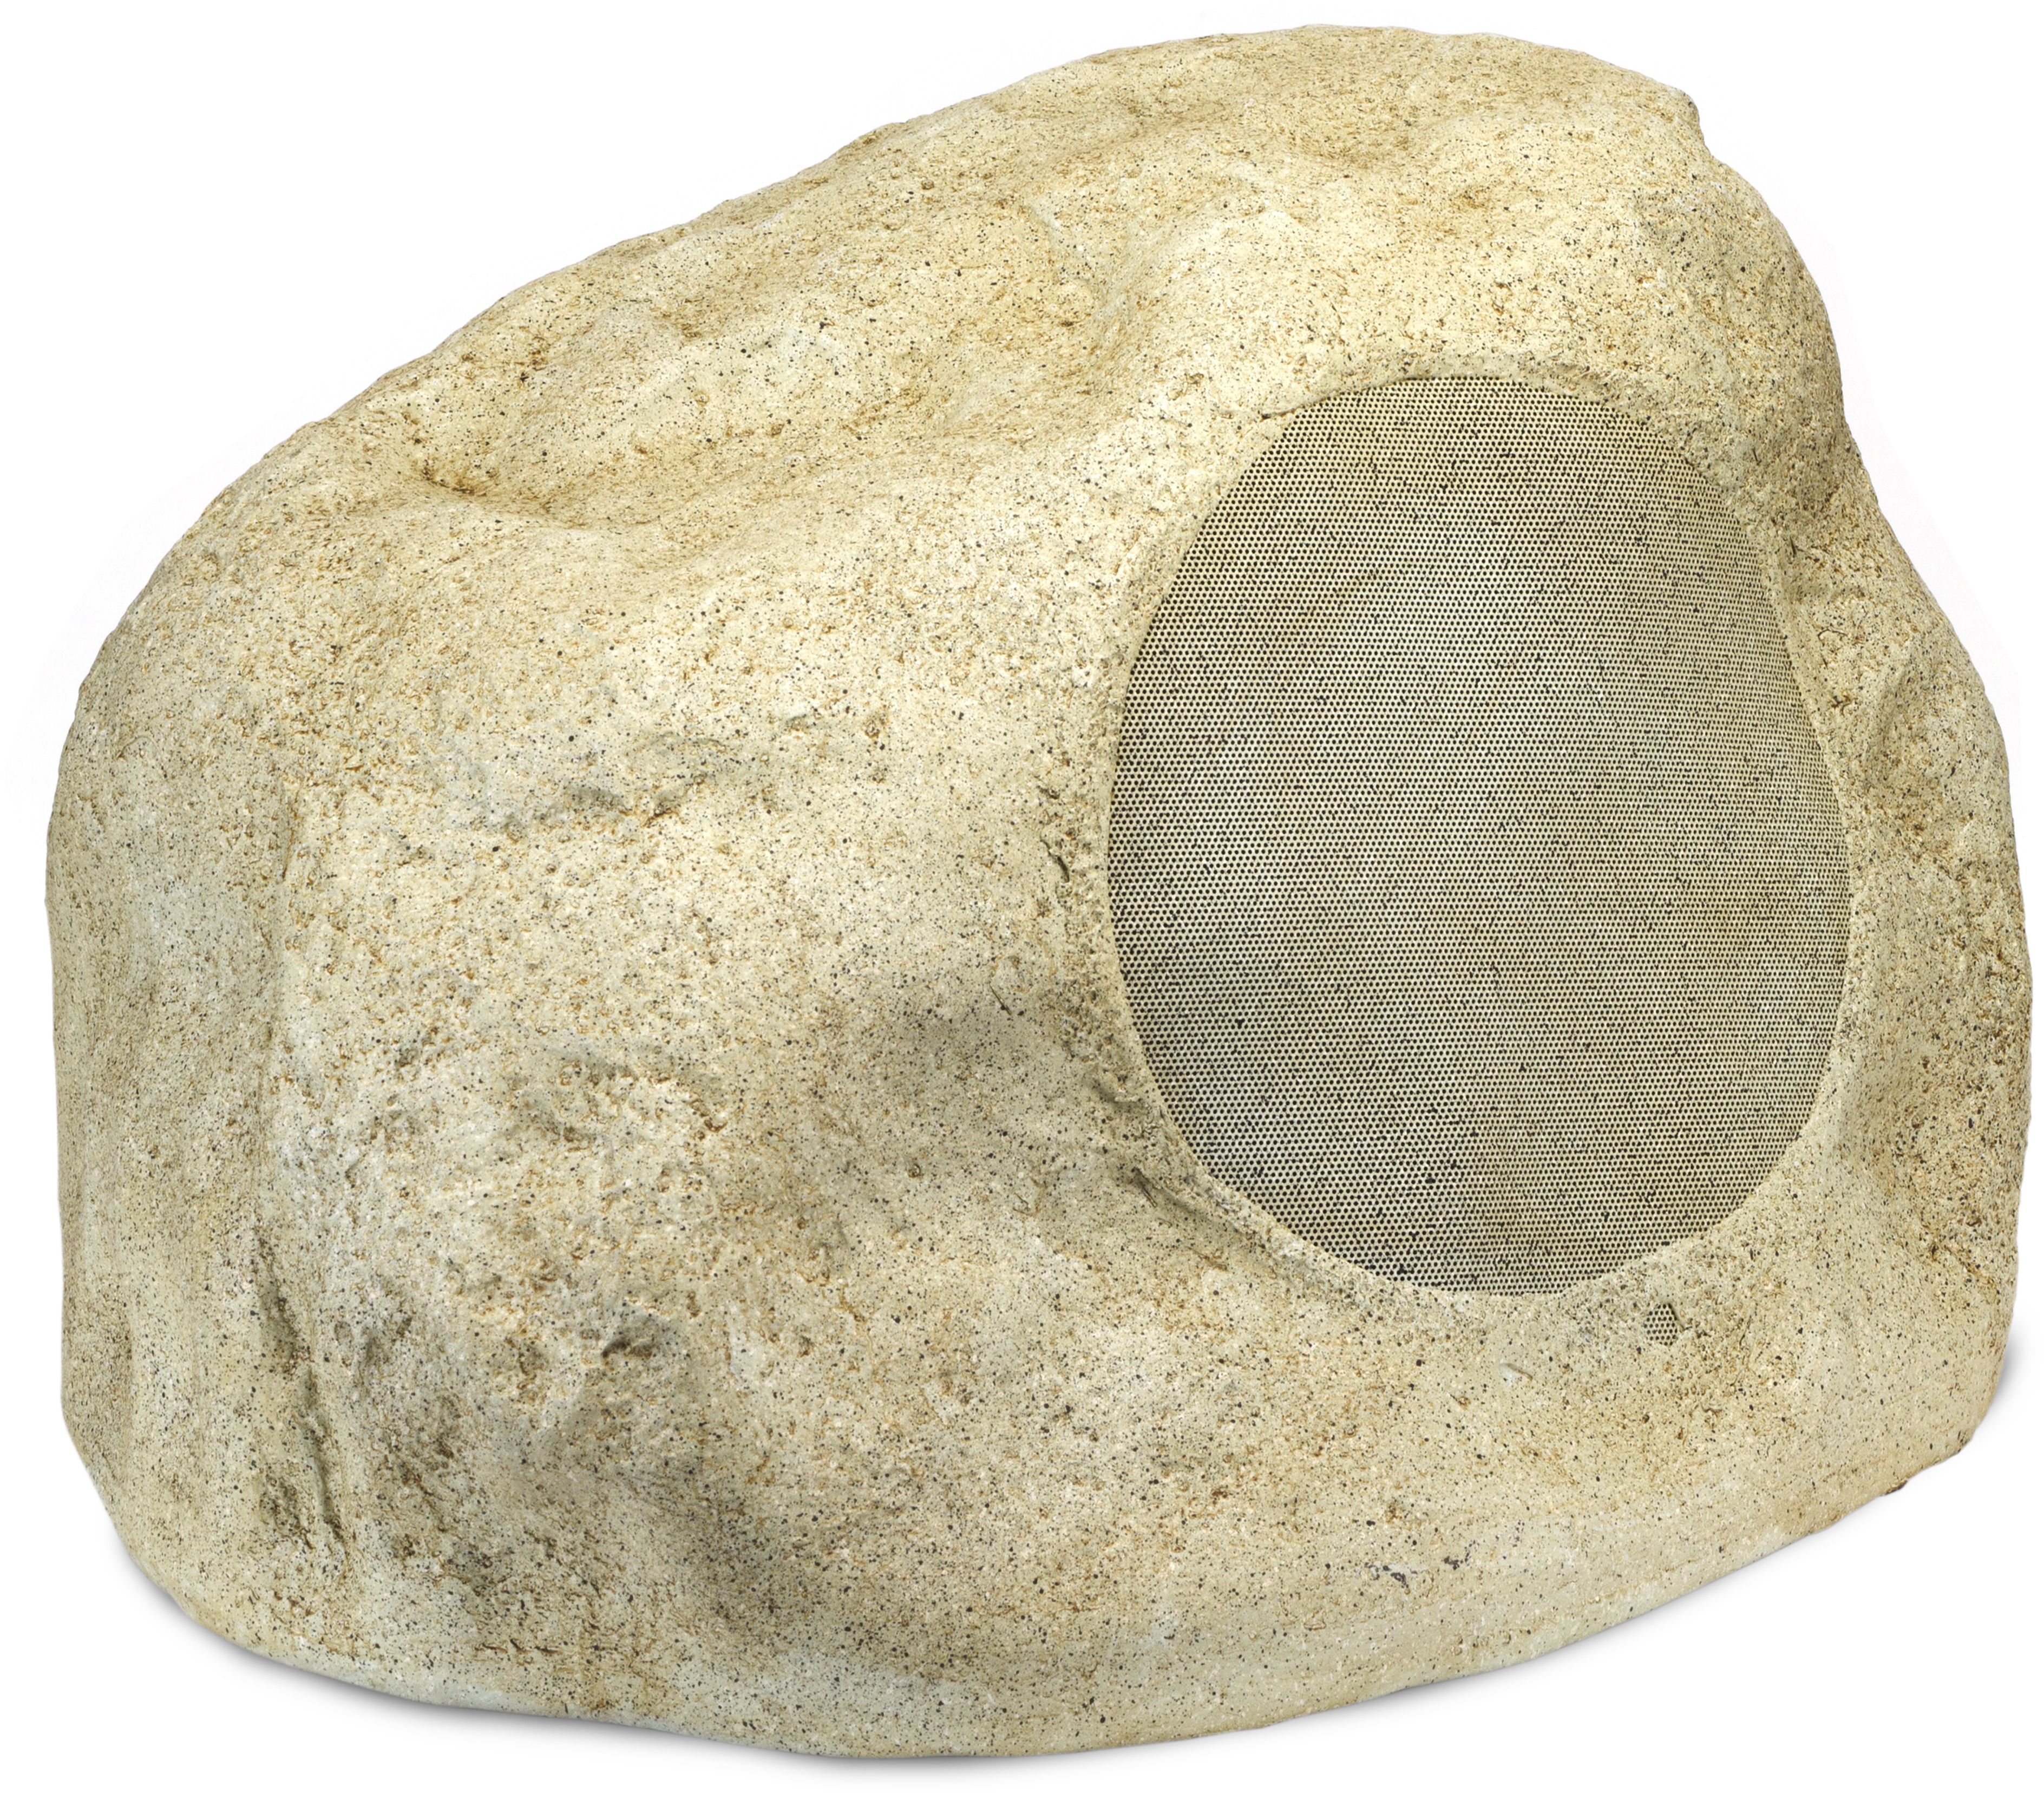 Klipsch® Professional Series 10" Sandstone Rock Subwoofer